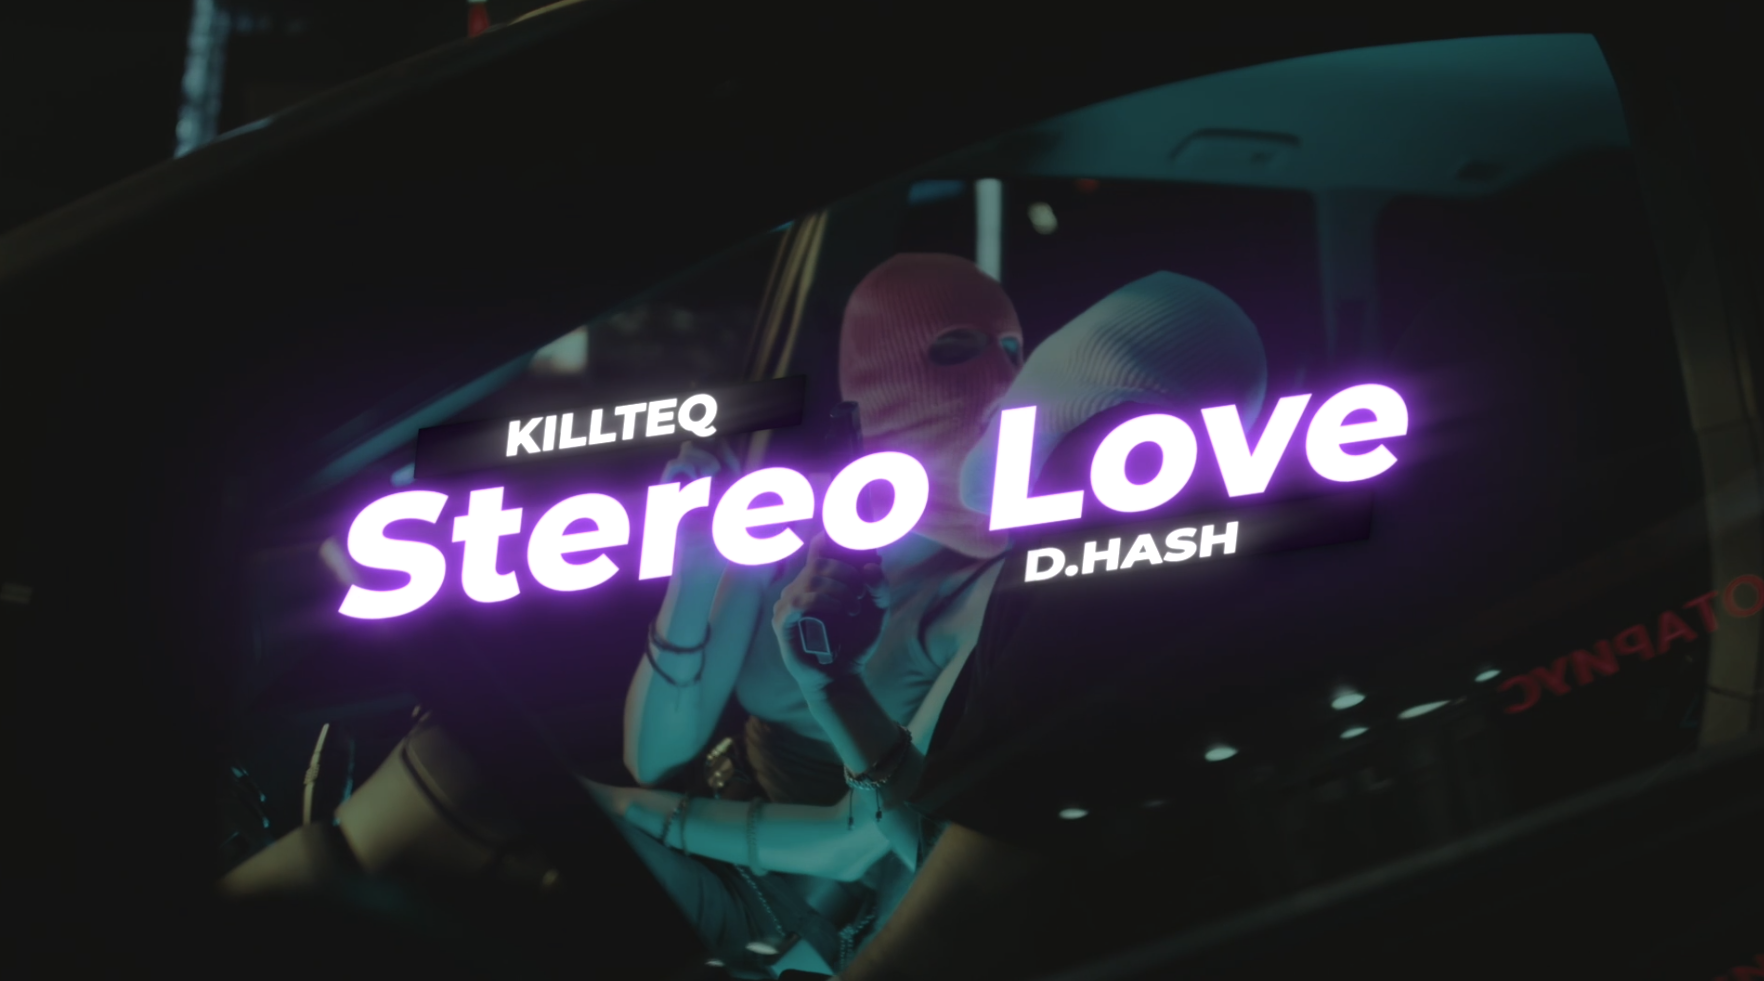 KILLTEQ x D.HASH - Stereo Love